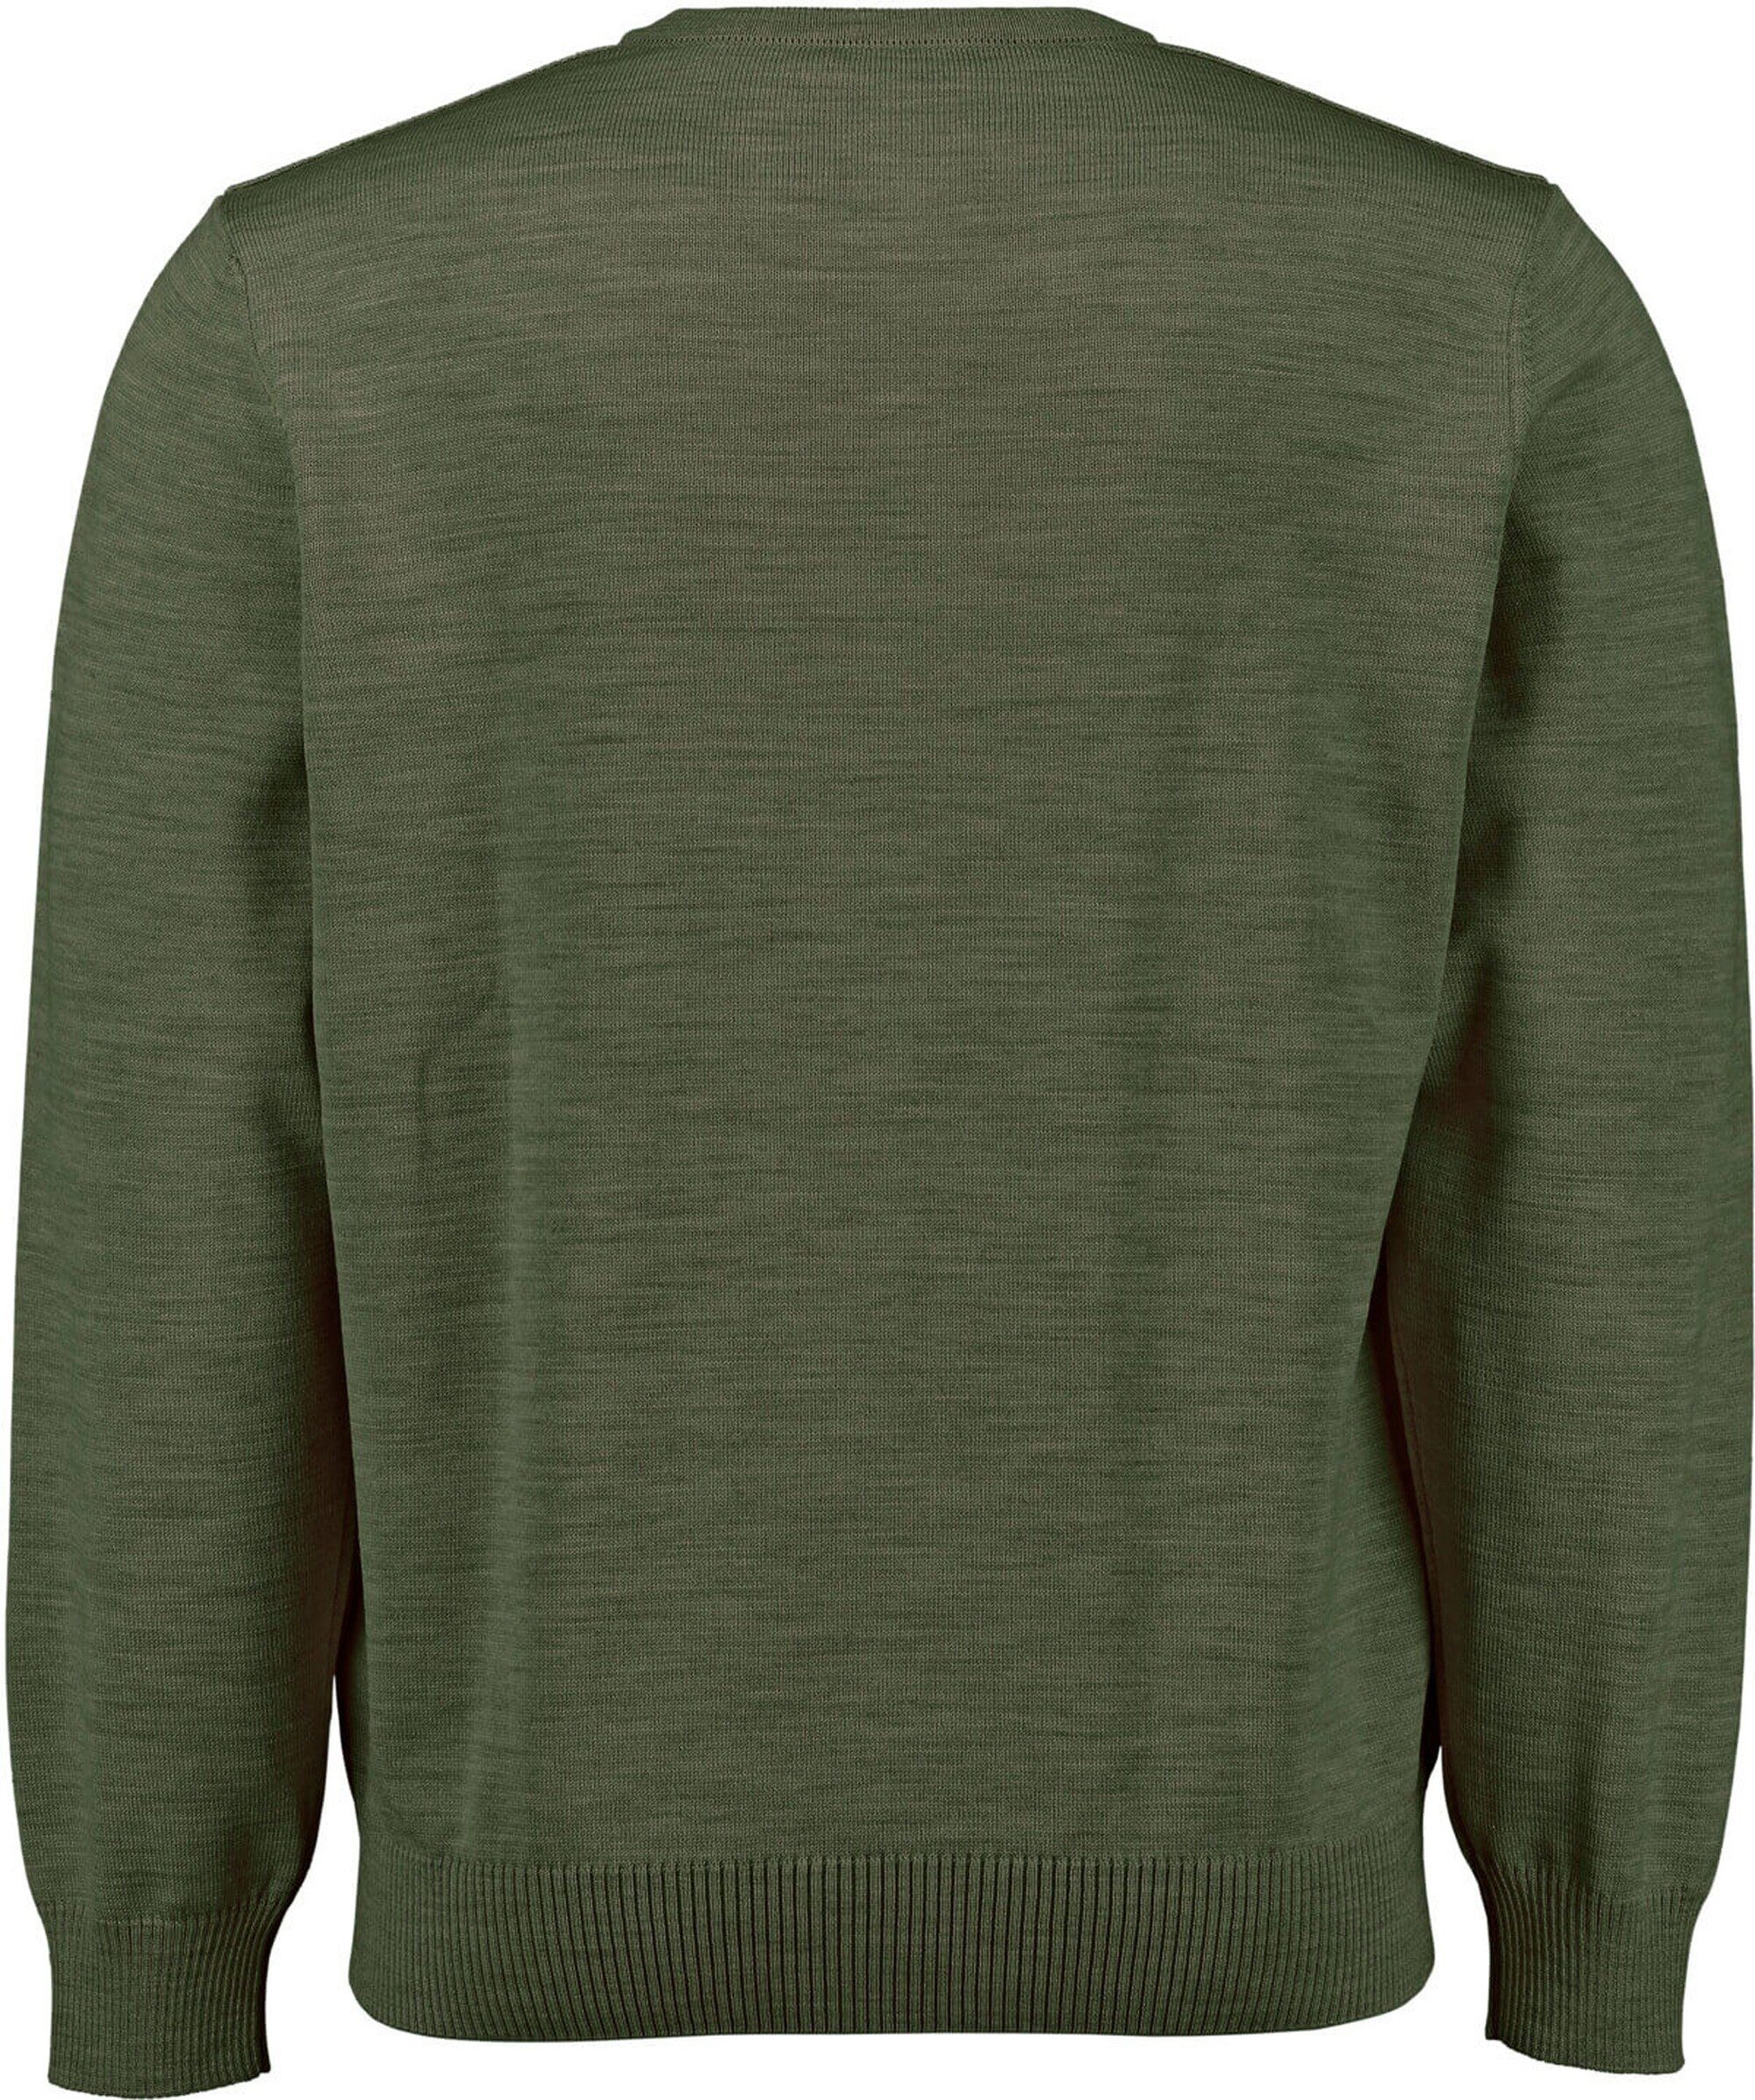 grün V-Ausschnitt Muenchen Pullover V-Ausschnitt-Pullover MAERZ MAERZ